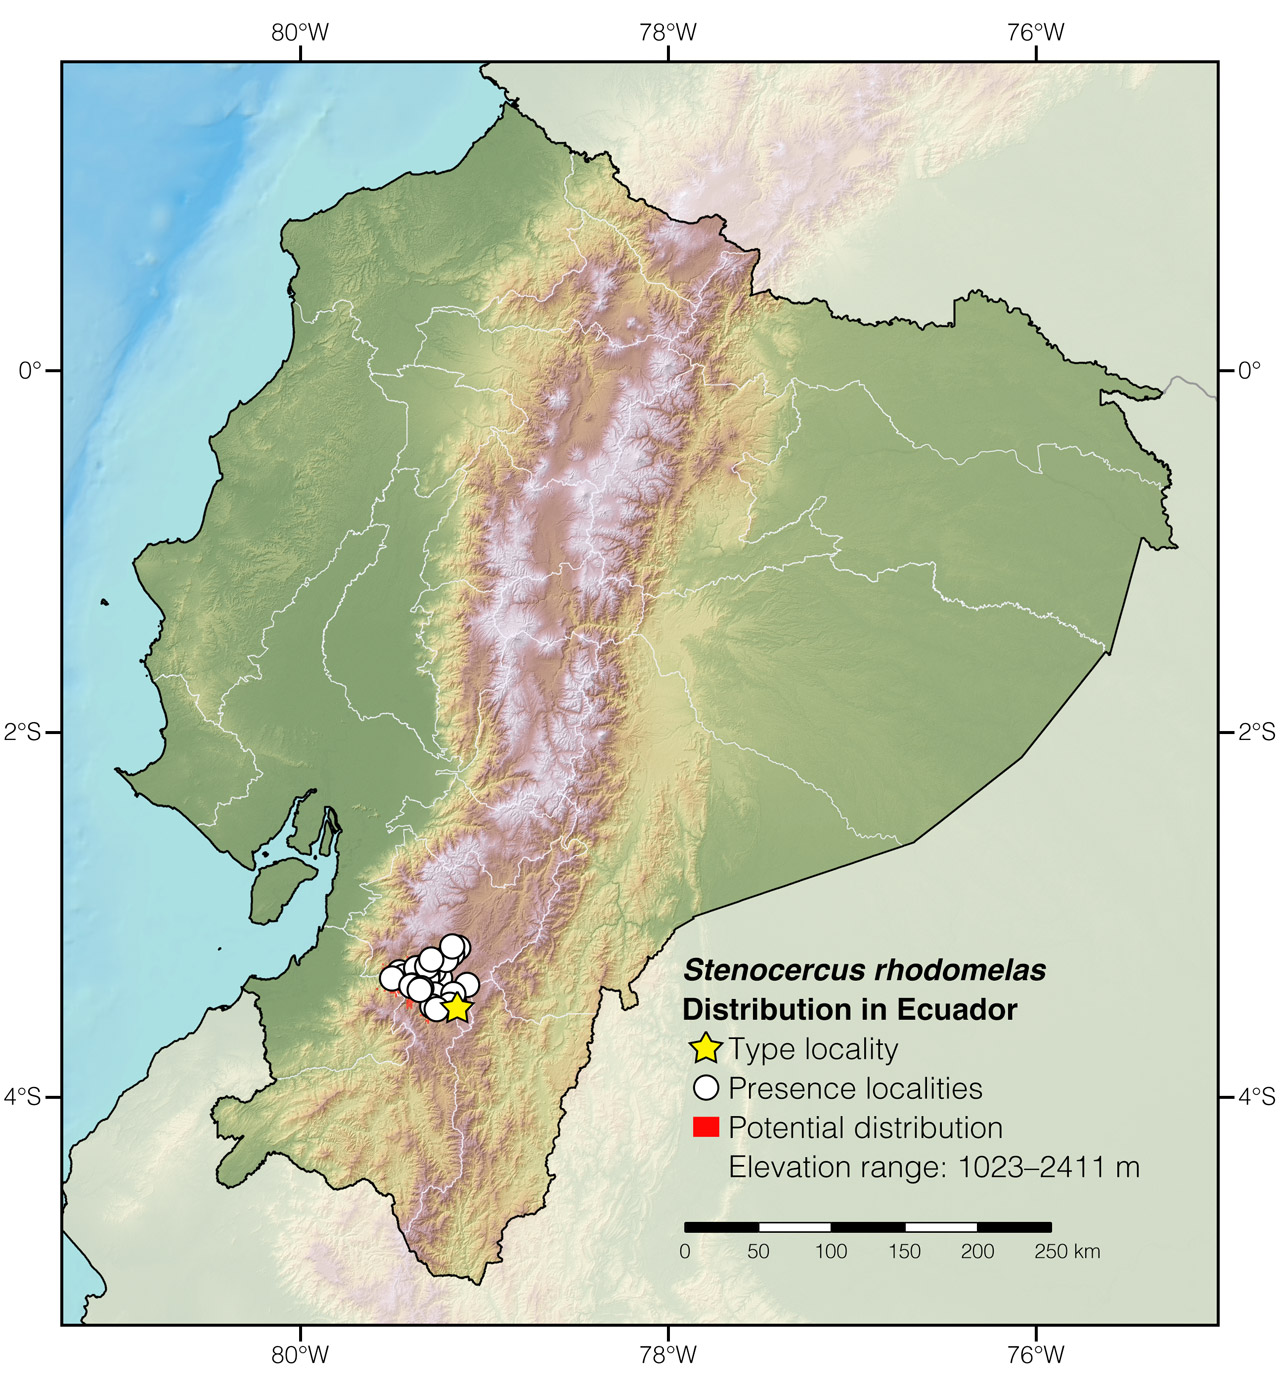 Distribution of Stenocercus rhodomelas in Ecuador